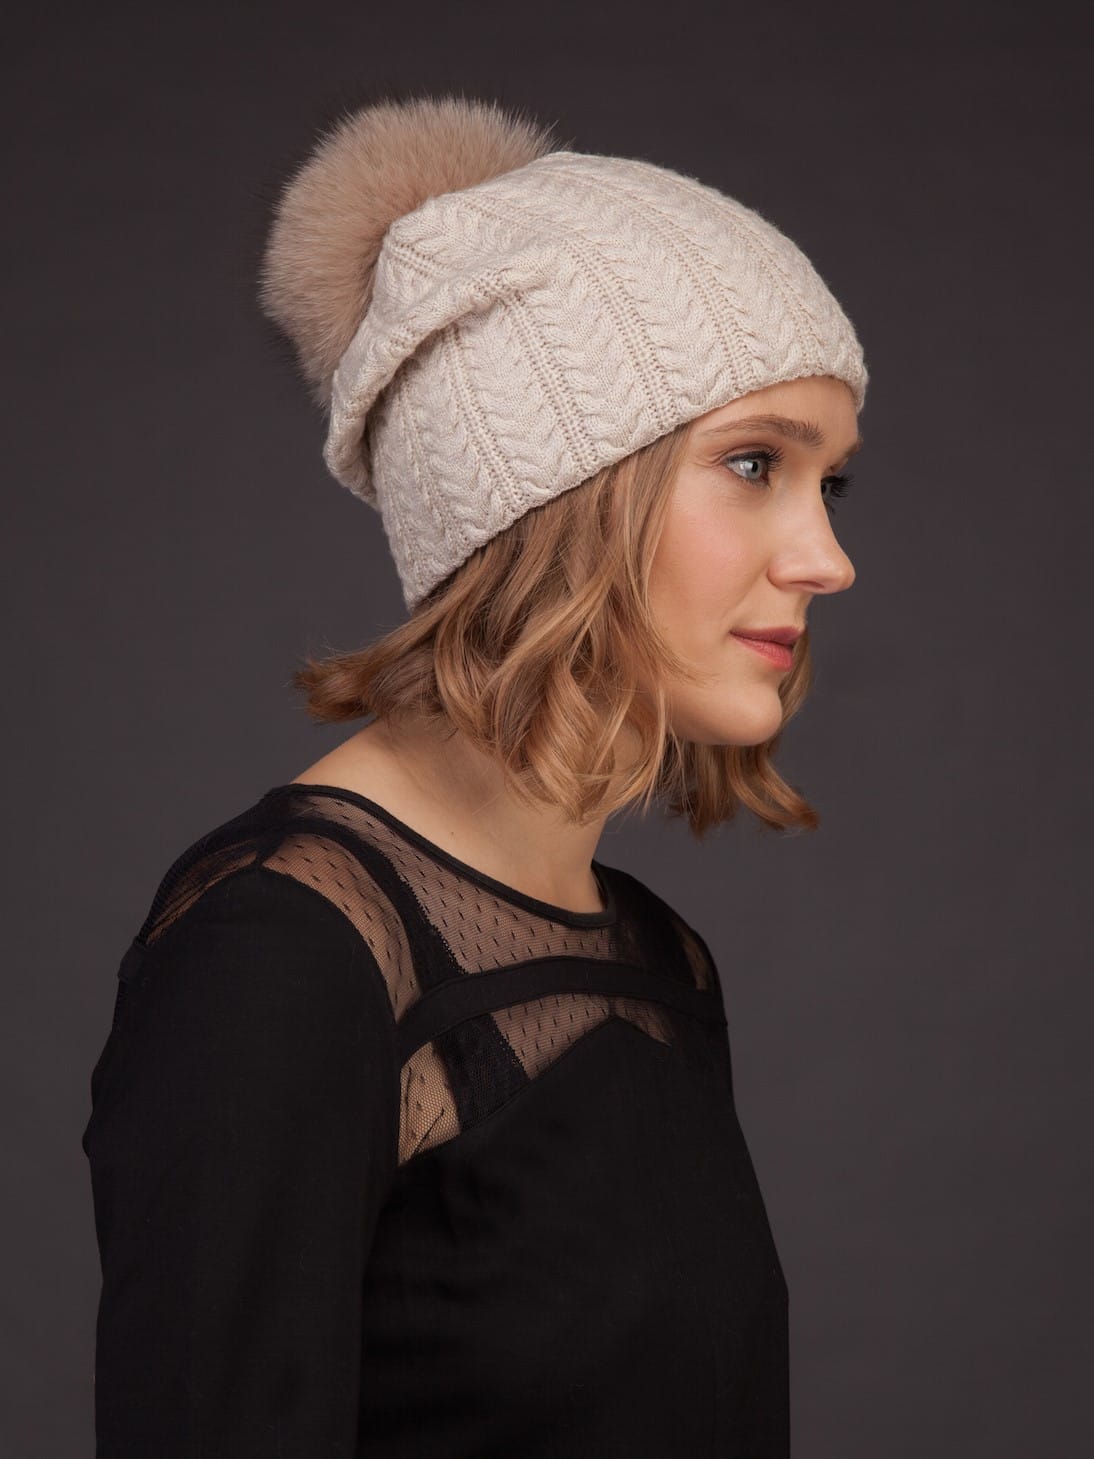 Beige Knit Cashmere Beanie Hat with Fox Fur Pom-Pom | Handmade by NordFur